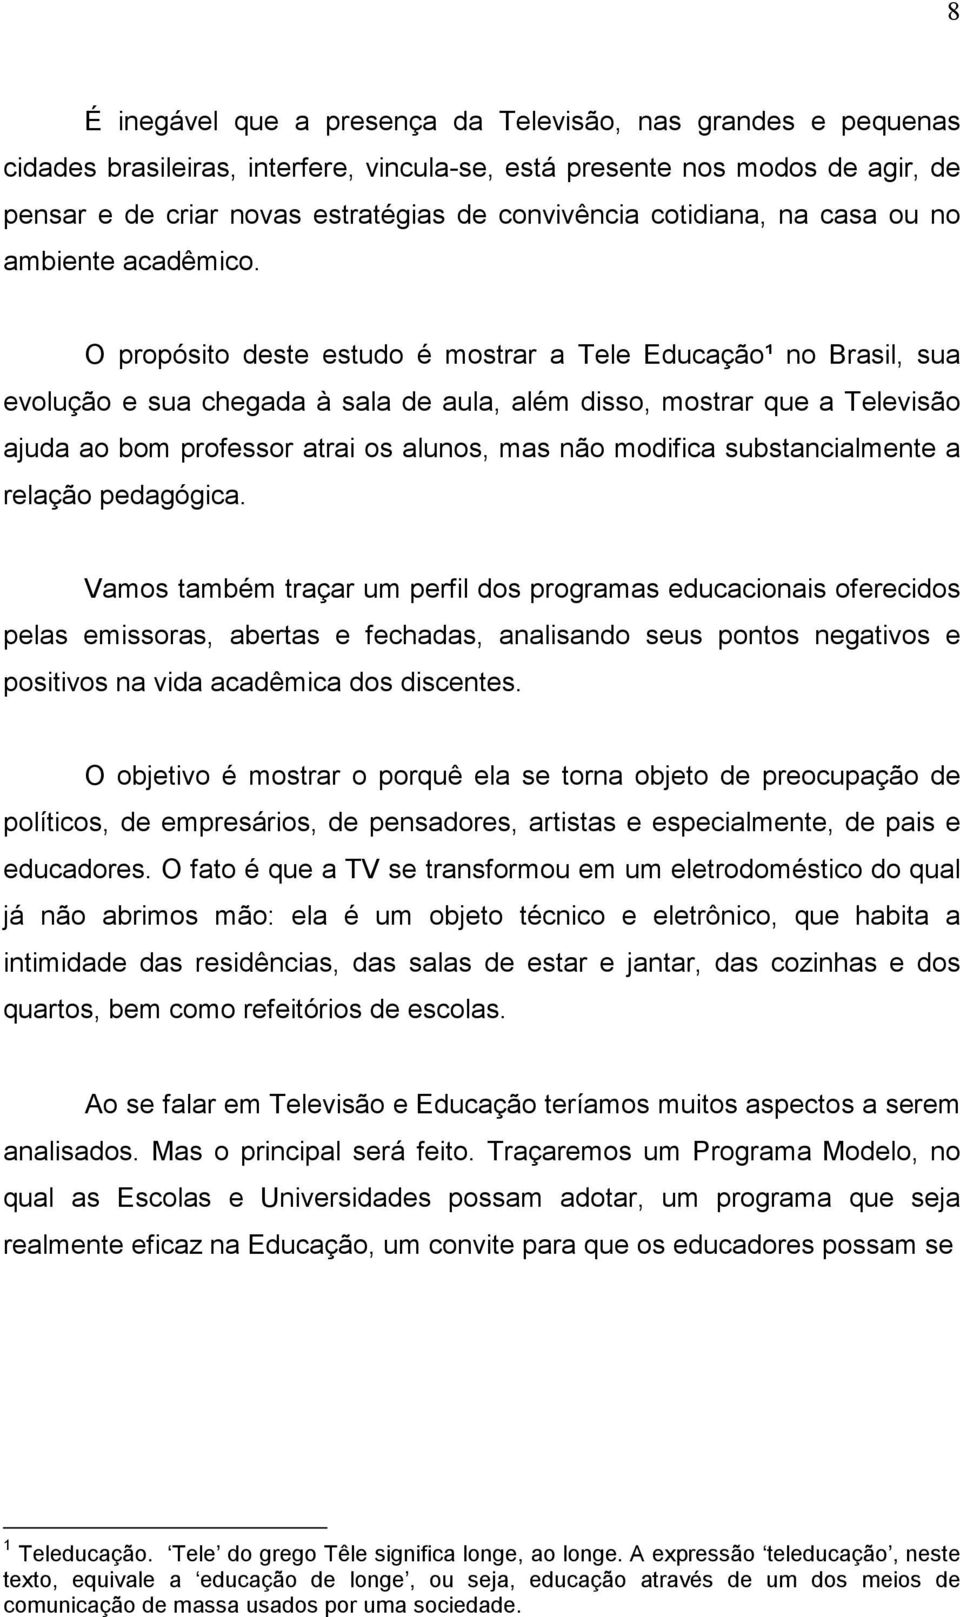 O propósito deste estudo é mostrar a Tele Educação¹ no Brasil, sua evolução e sua chegada à sala de aula, além disso, mostrar que a Televisão ajuda ao bom professor atrai os alunos, mas não modifica